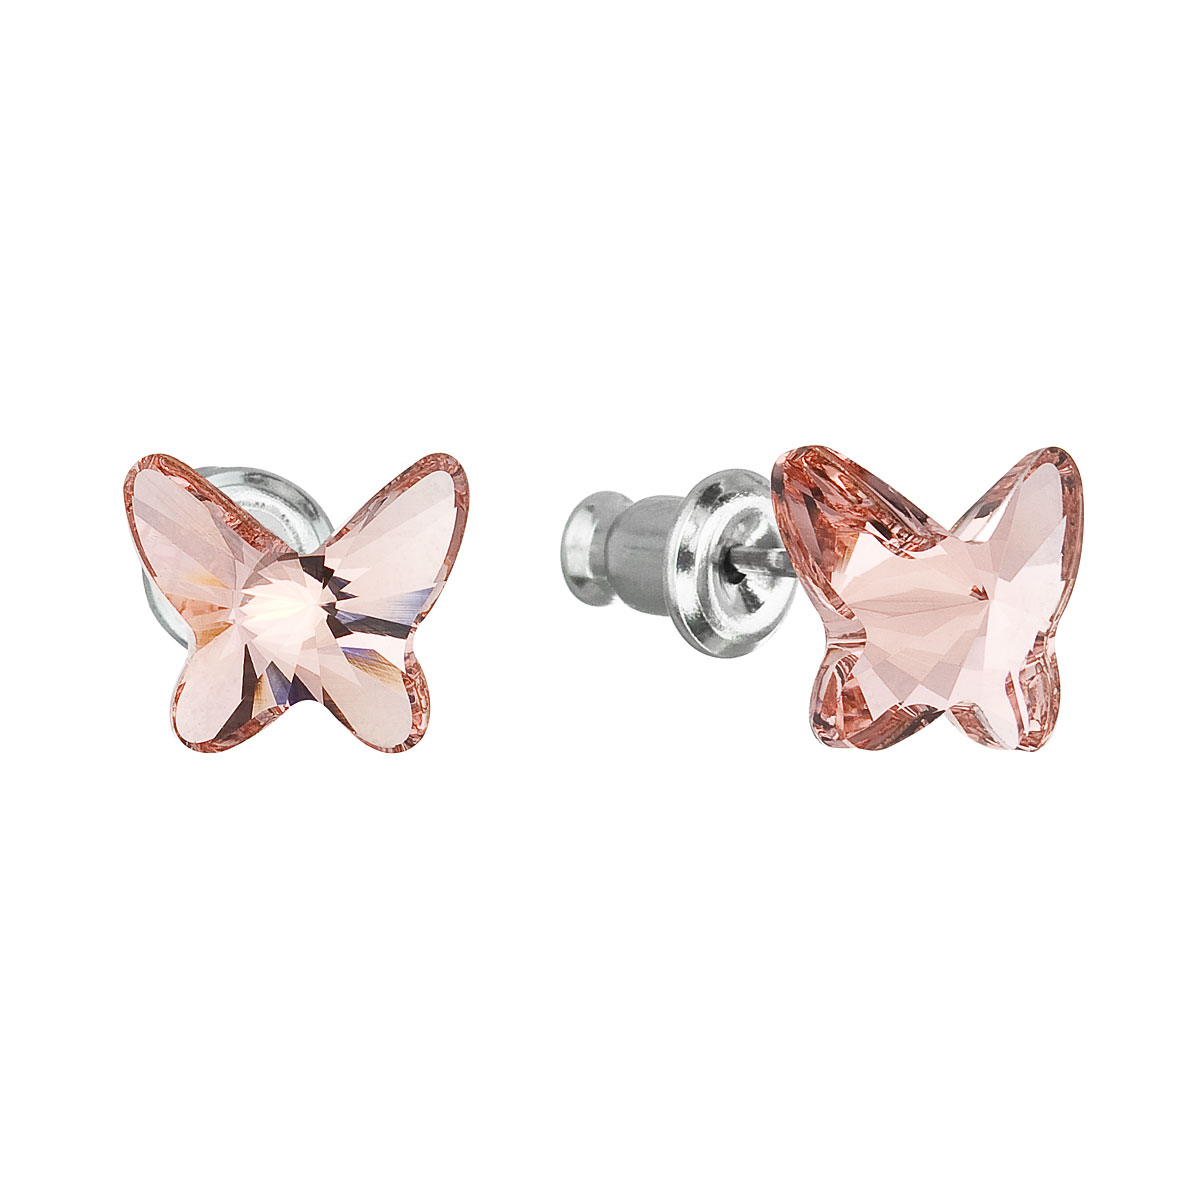 Evolution Group Náušnice bižuterie se Swarovski krystaly růžový motýl 51048.3 rose peach